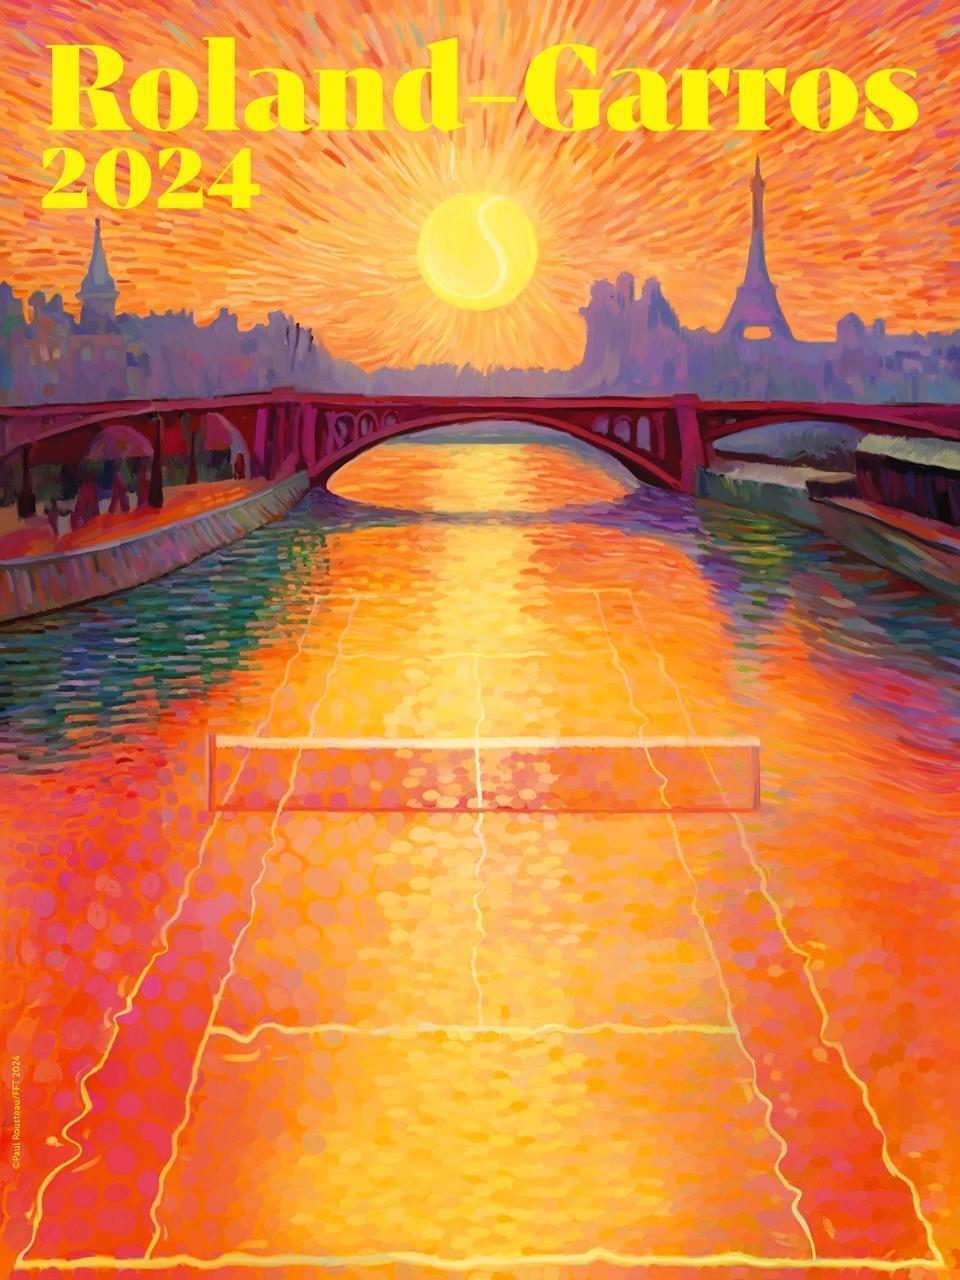 RolandGarros. L’affiche de l’édition 2024 dévoilée, avec un clin d’œil aux Jeux SaintBrieuc